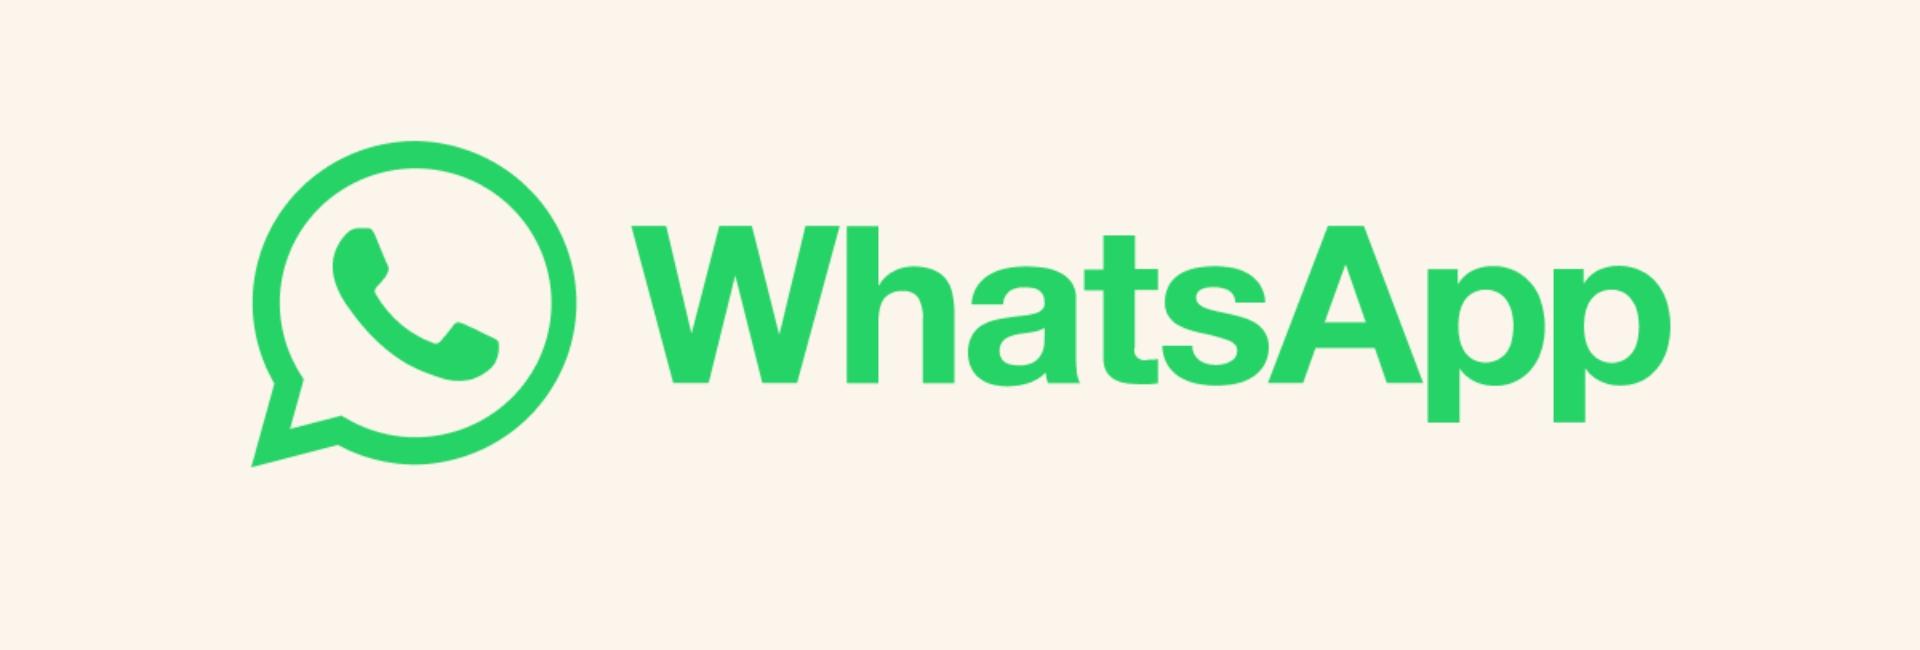 WhatsApp libera no Brasil recurso que permite enviar mensagens para até 5 mil pessoas